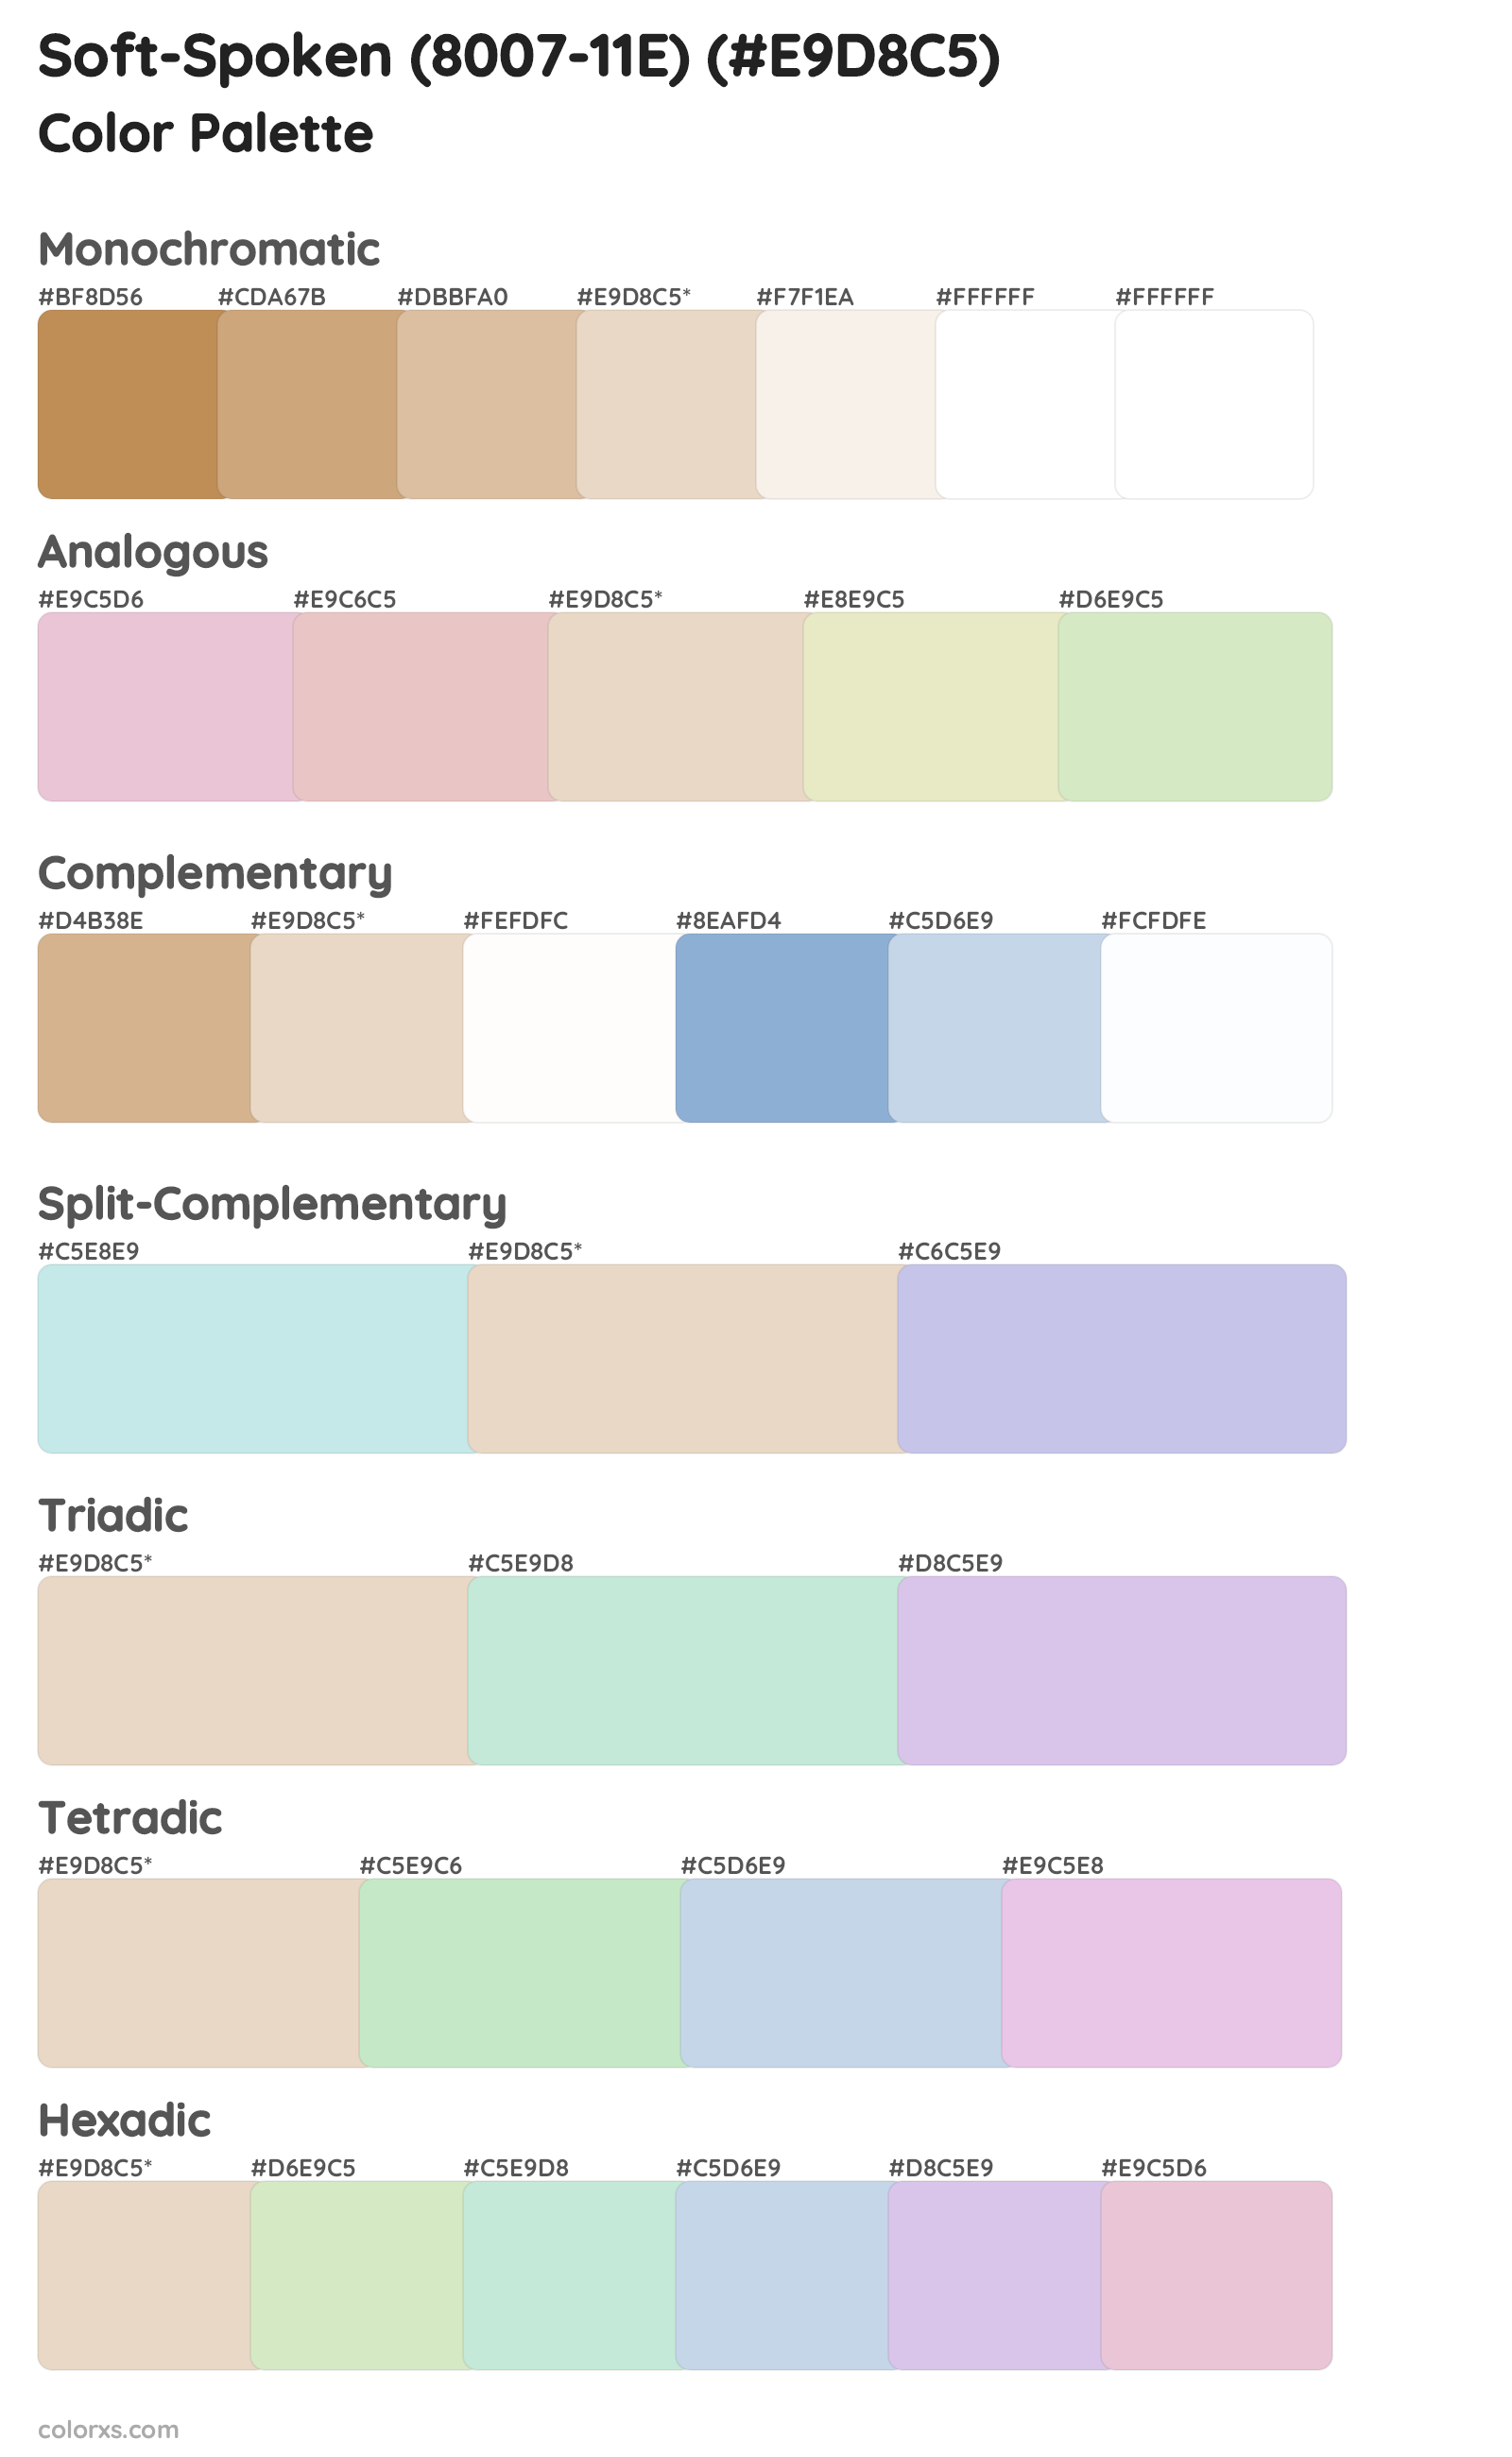 Soft-Spoken (8007-11E) Color Scheme Palettes